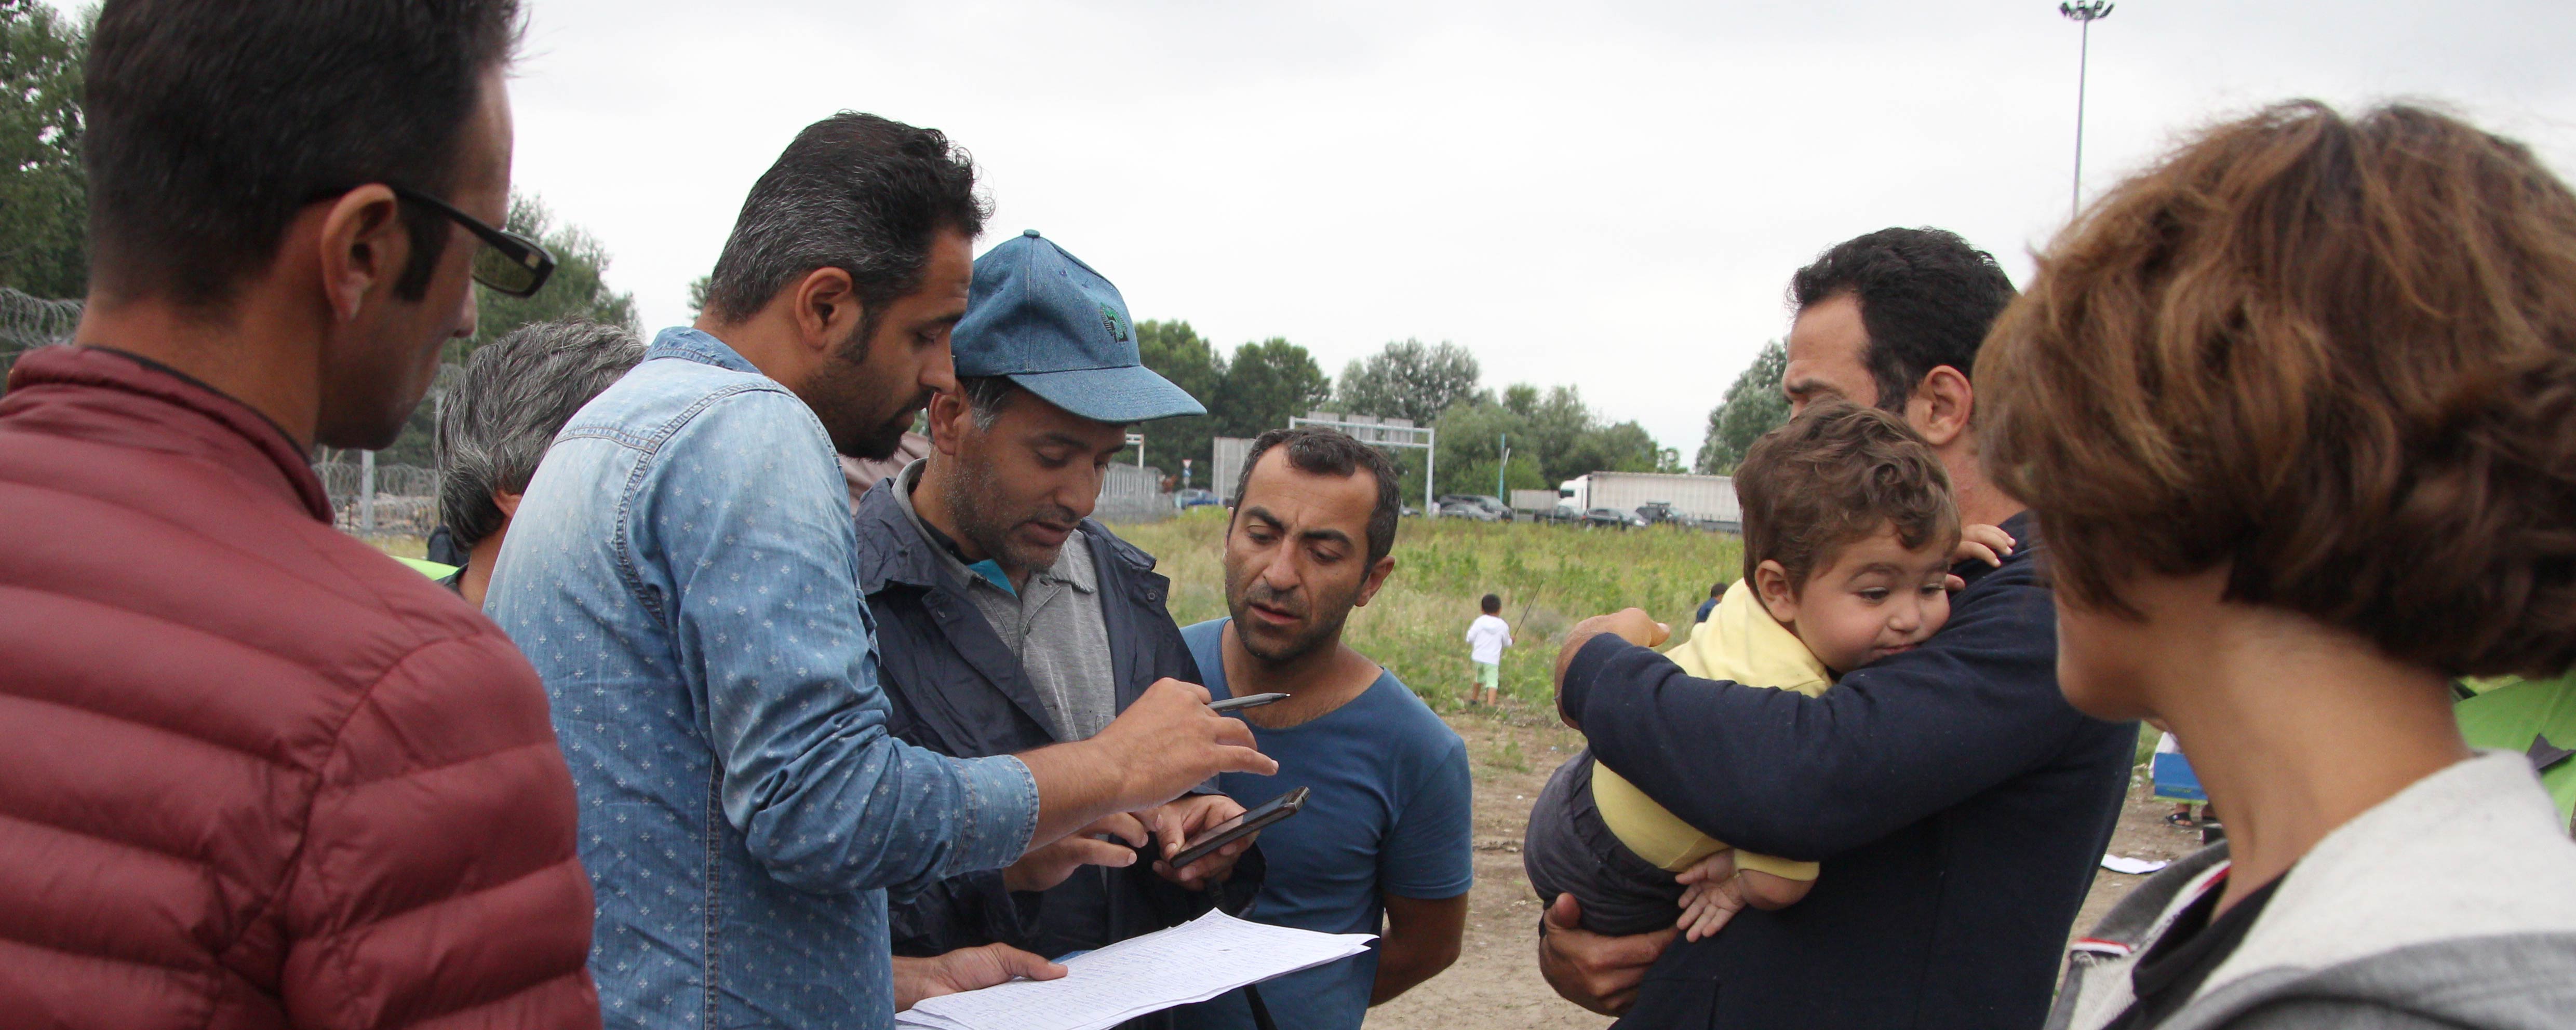 A táborok átszervezése miatt költözködnek a menekültek